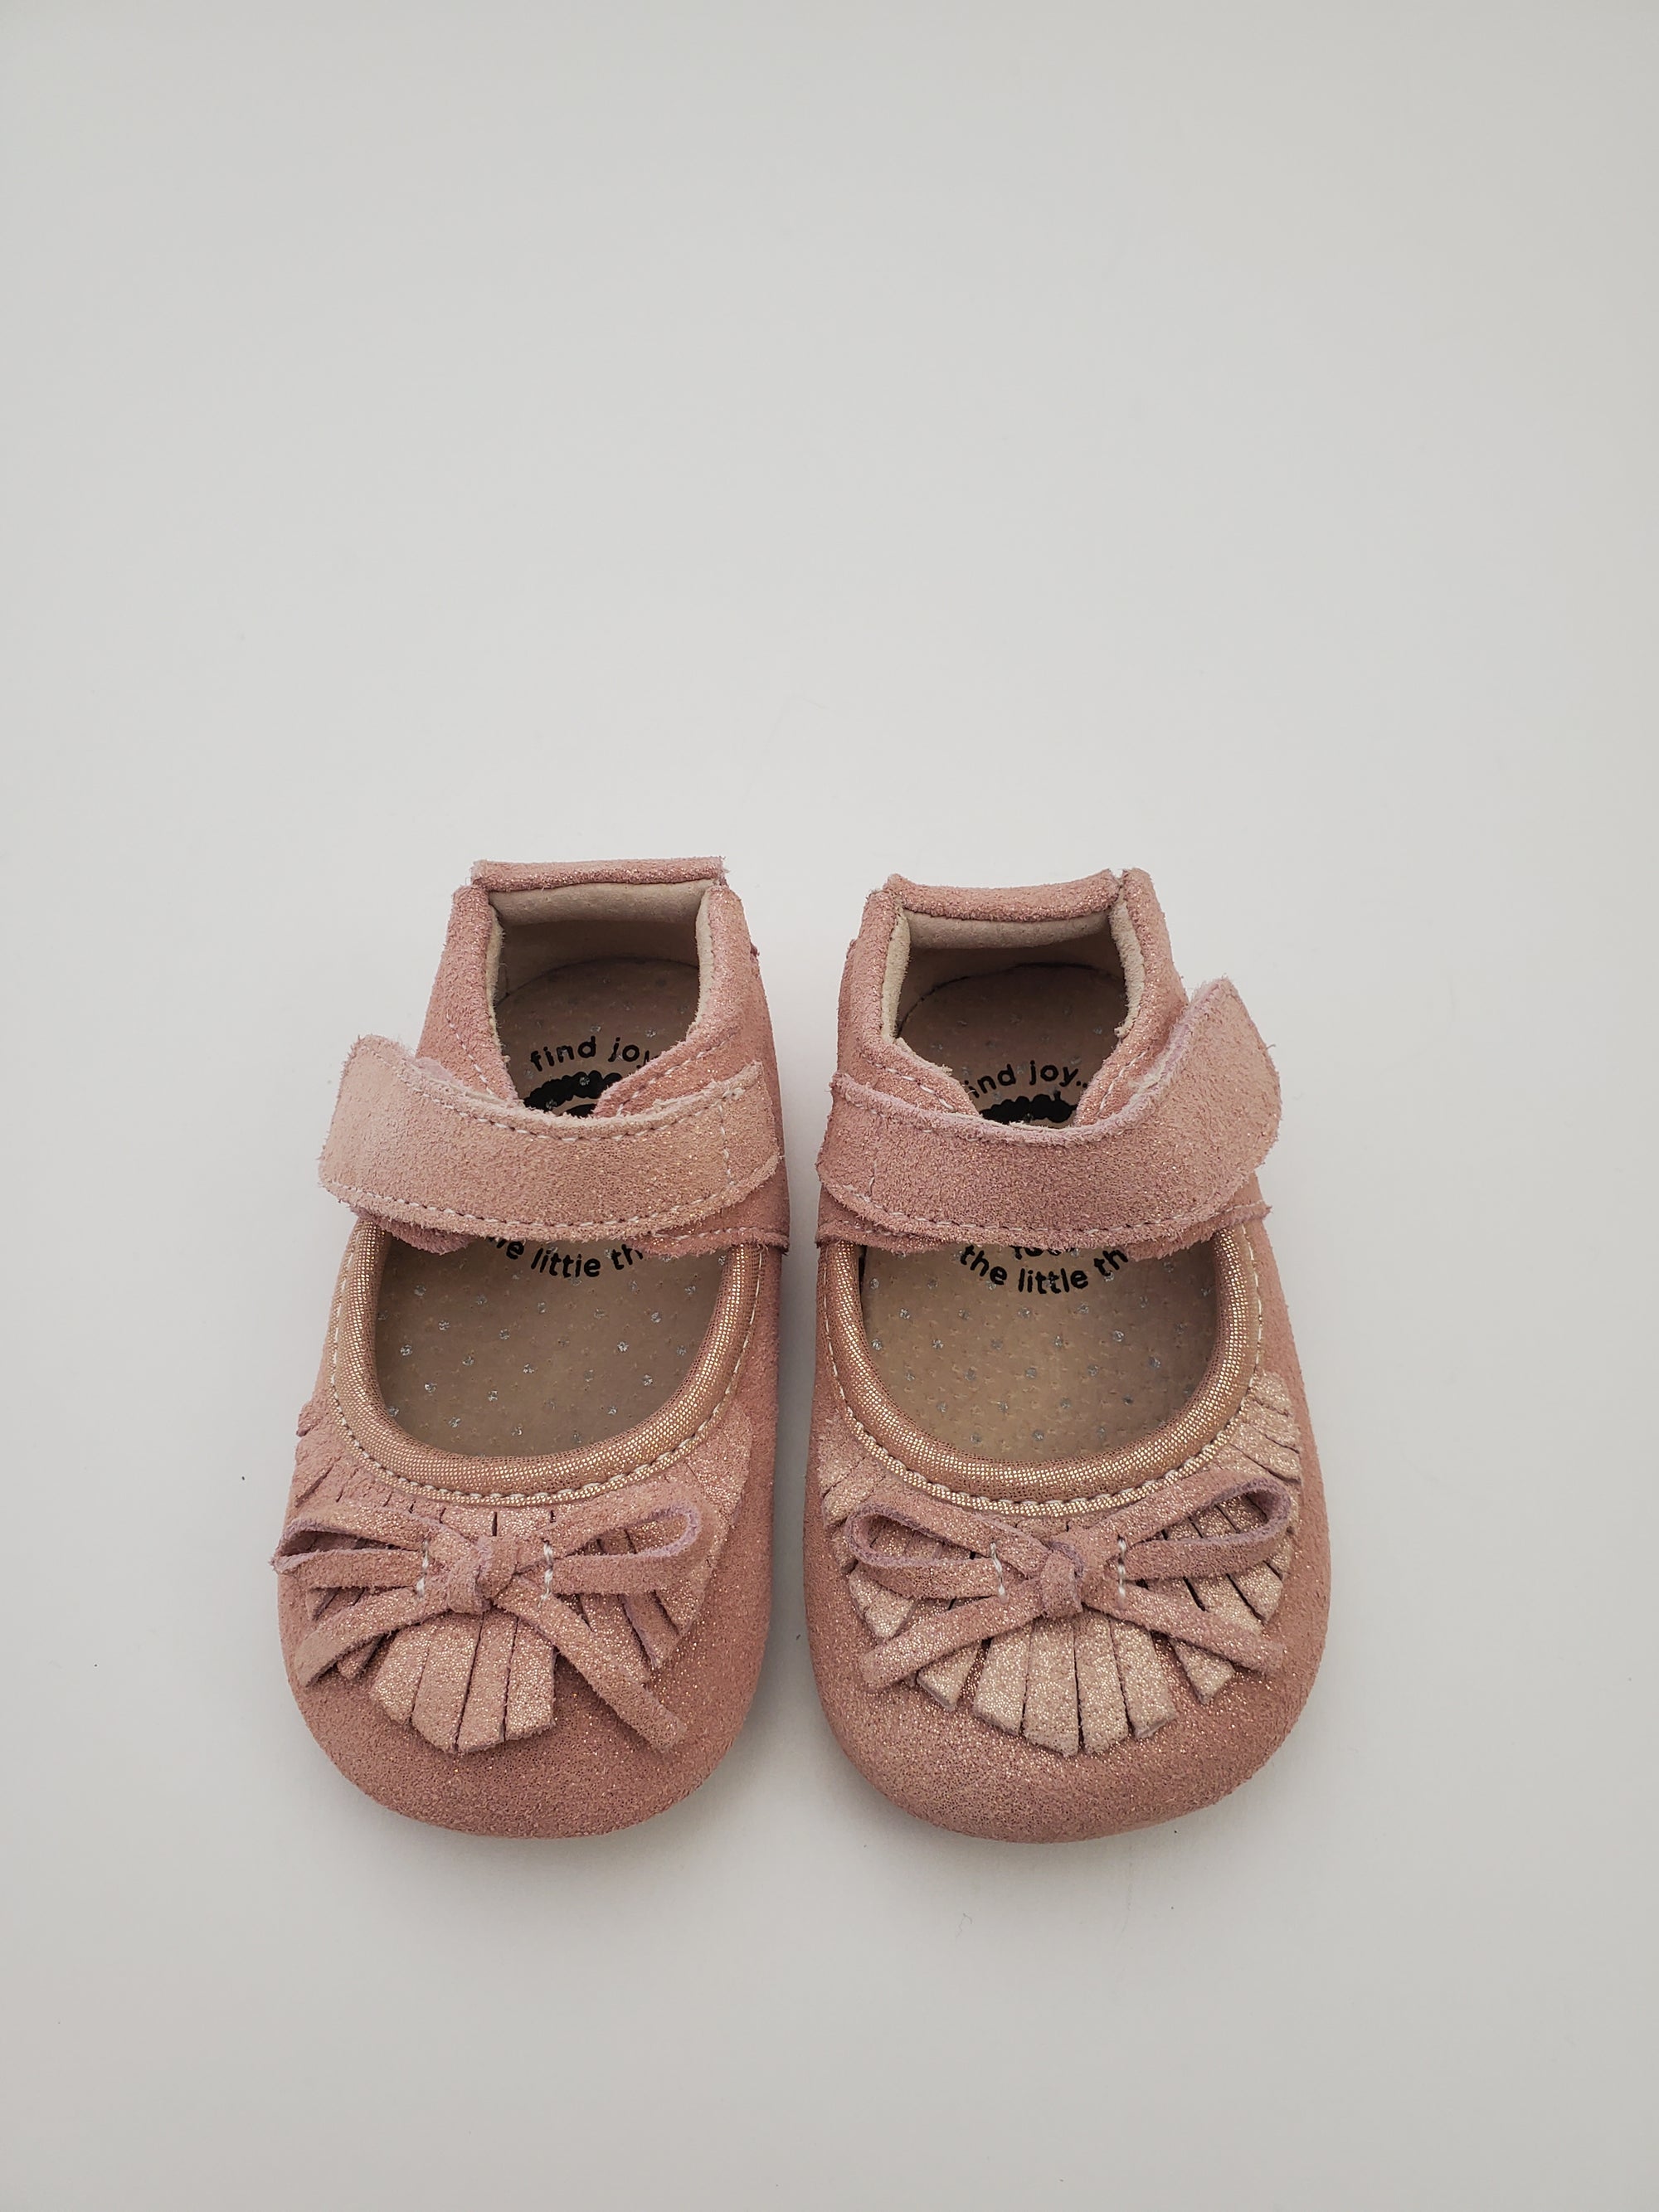 Livie & Luca Willow Crib Shoe in Desert Rose Shimmer